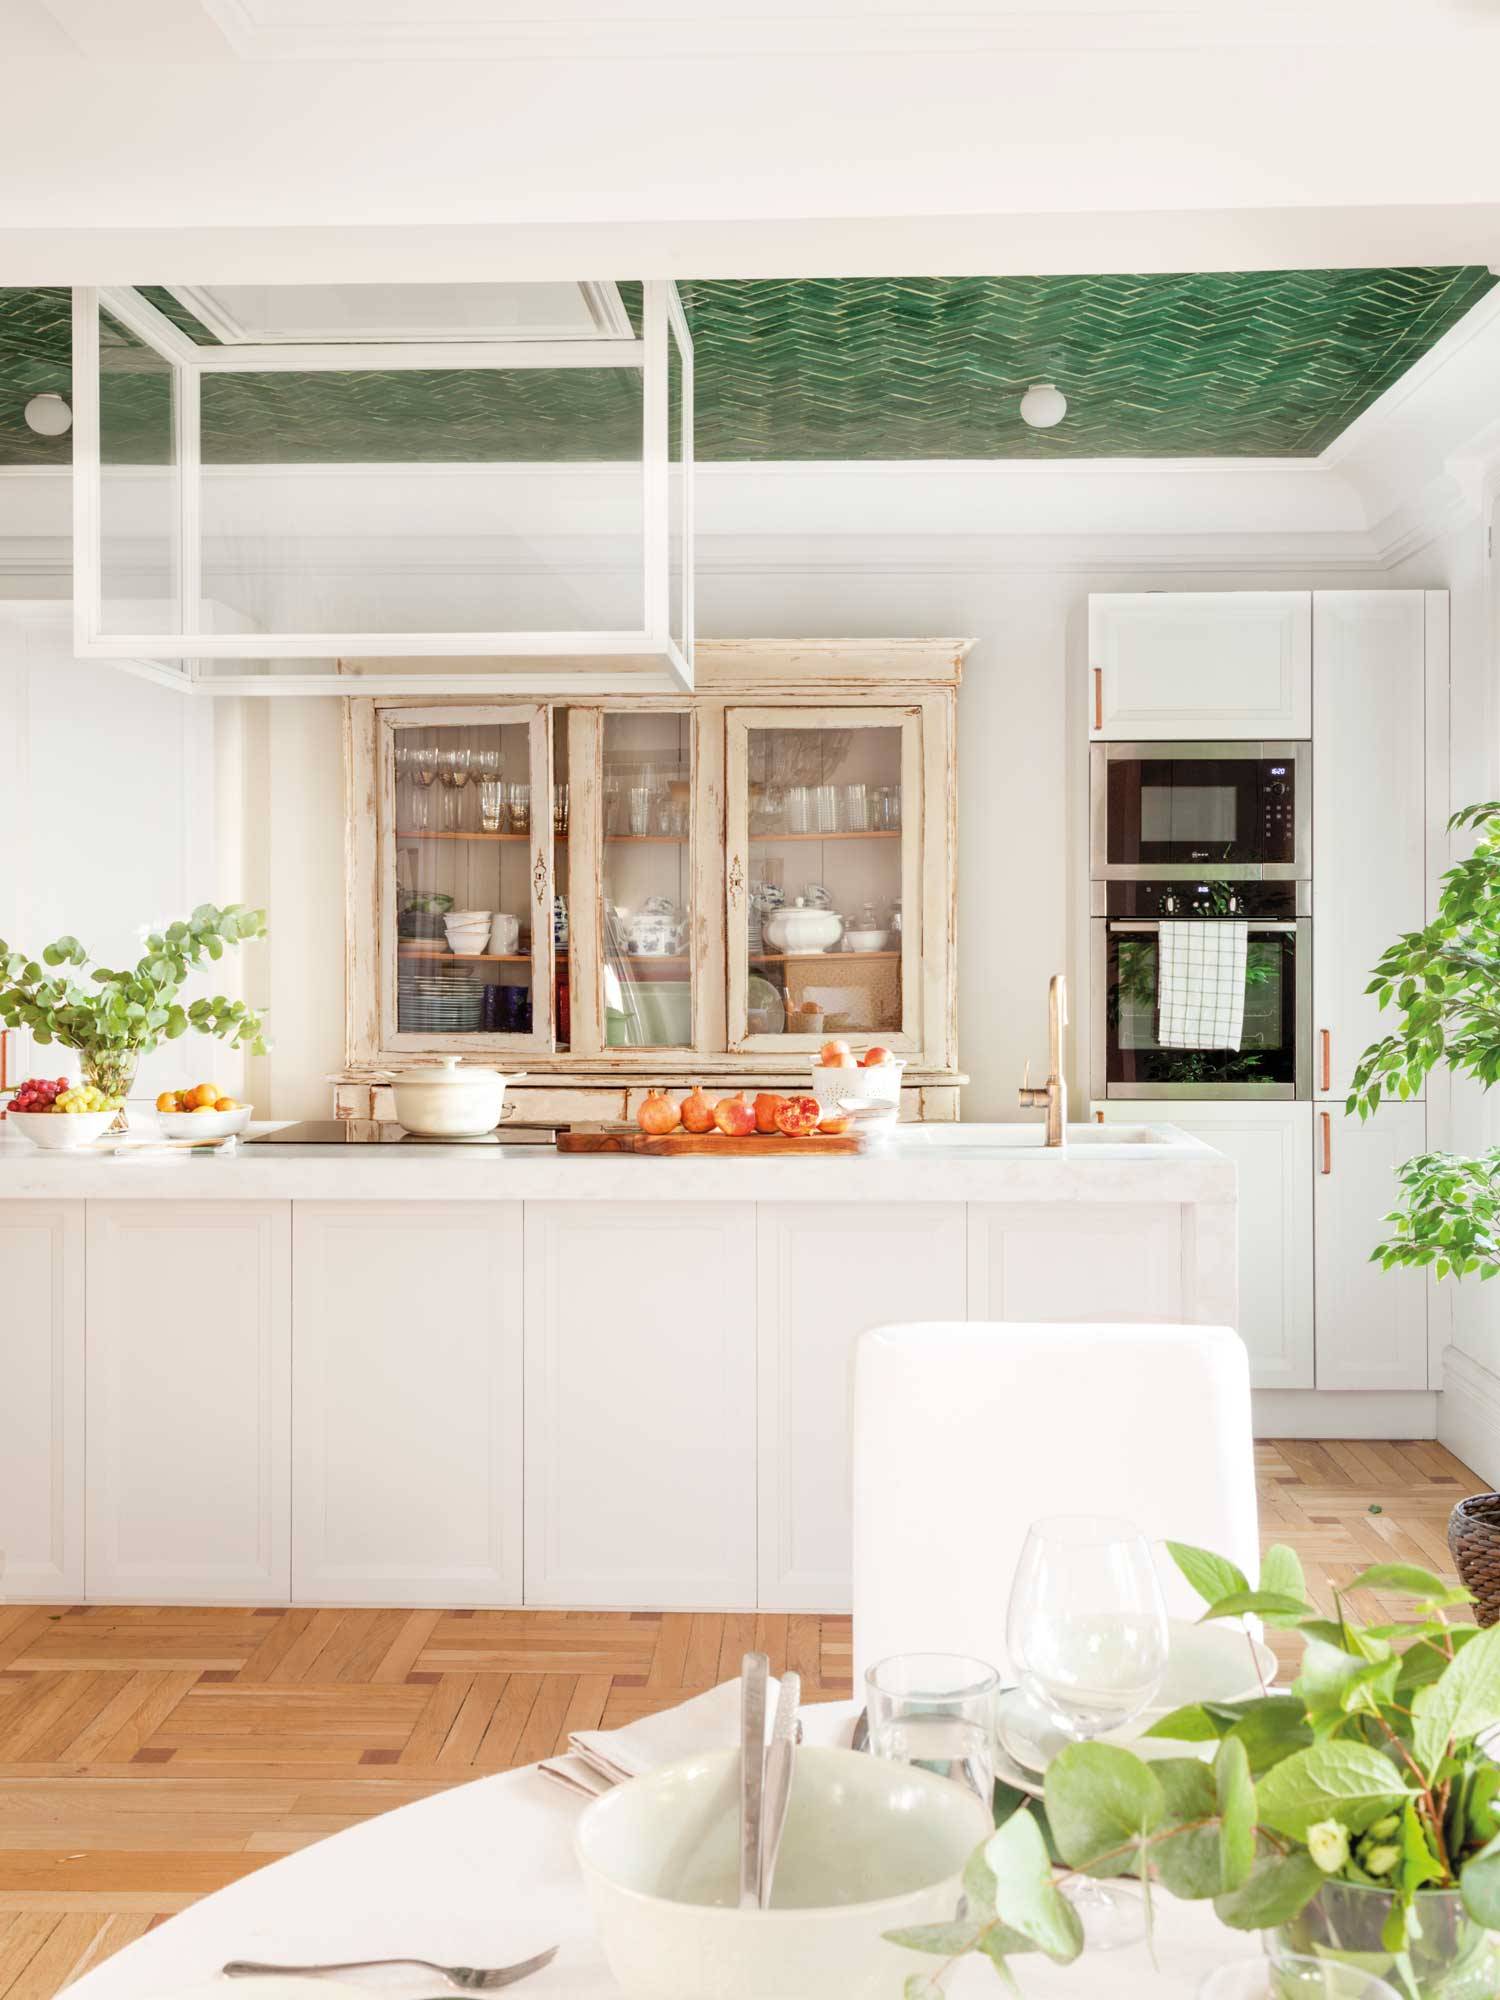 Cocina blanca con azulejos verdes en el techo en la zona de la isla.